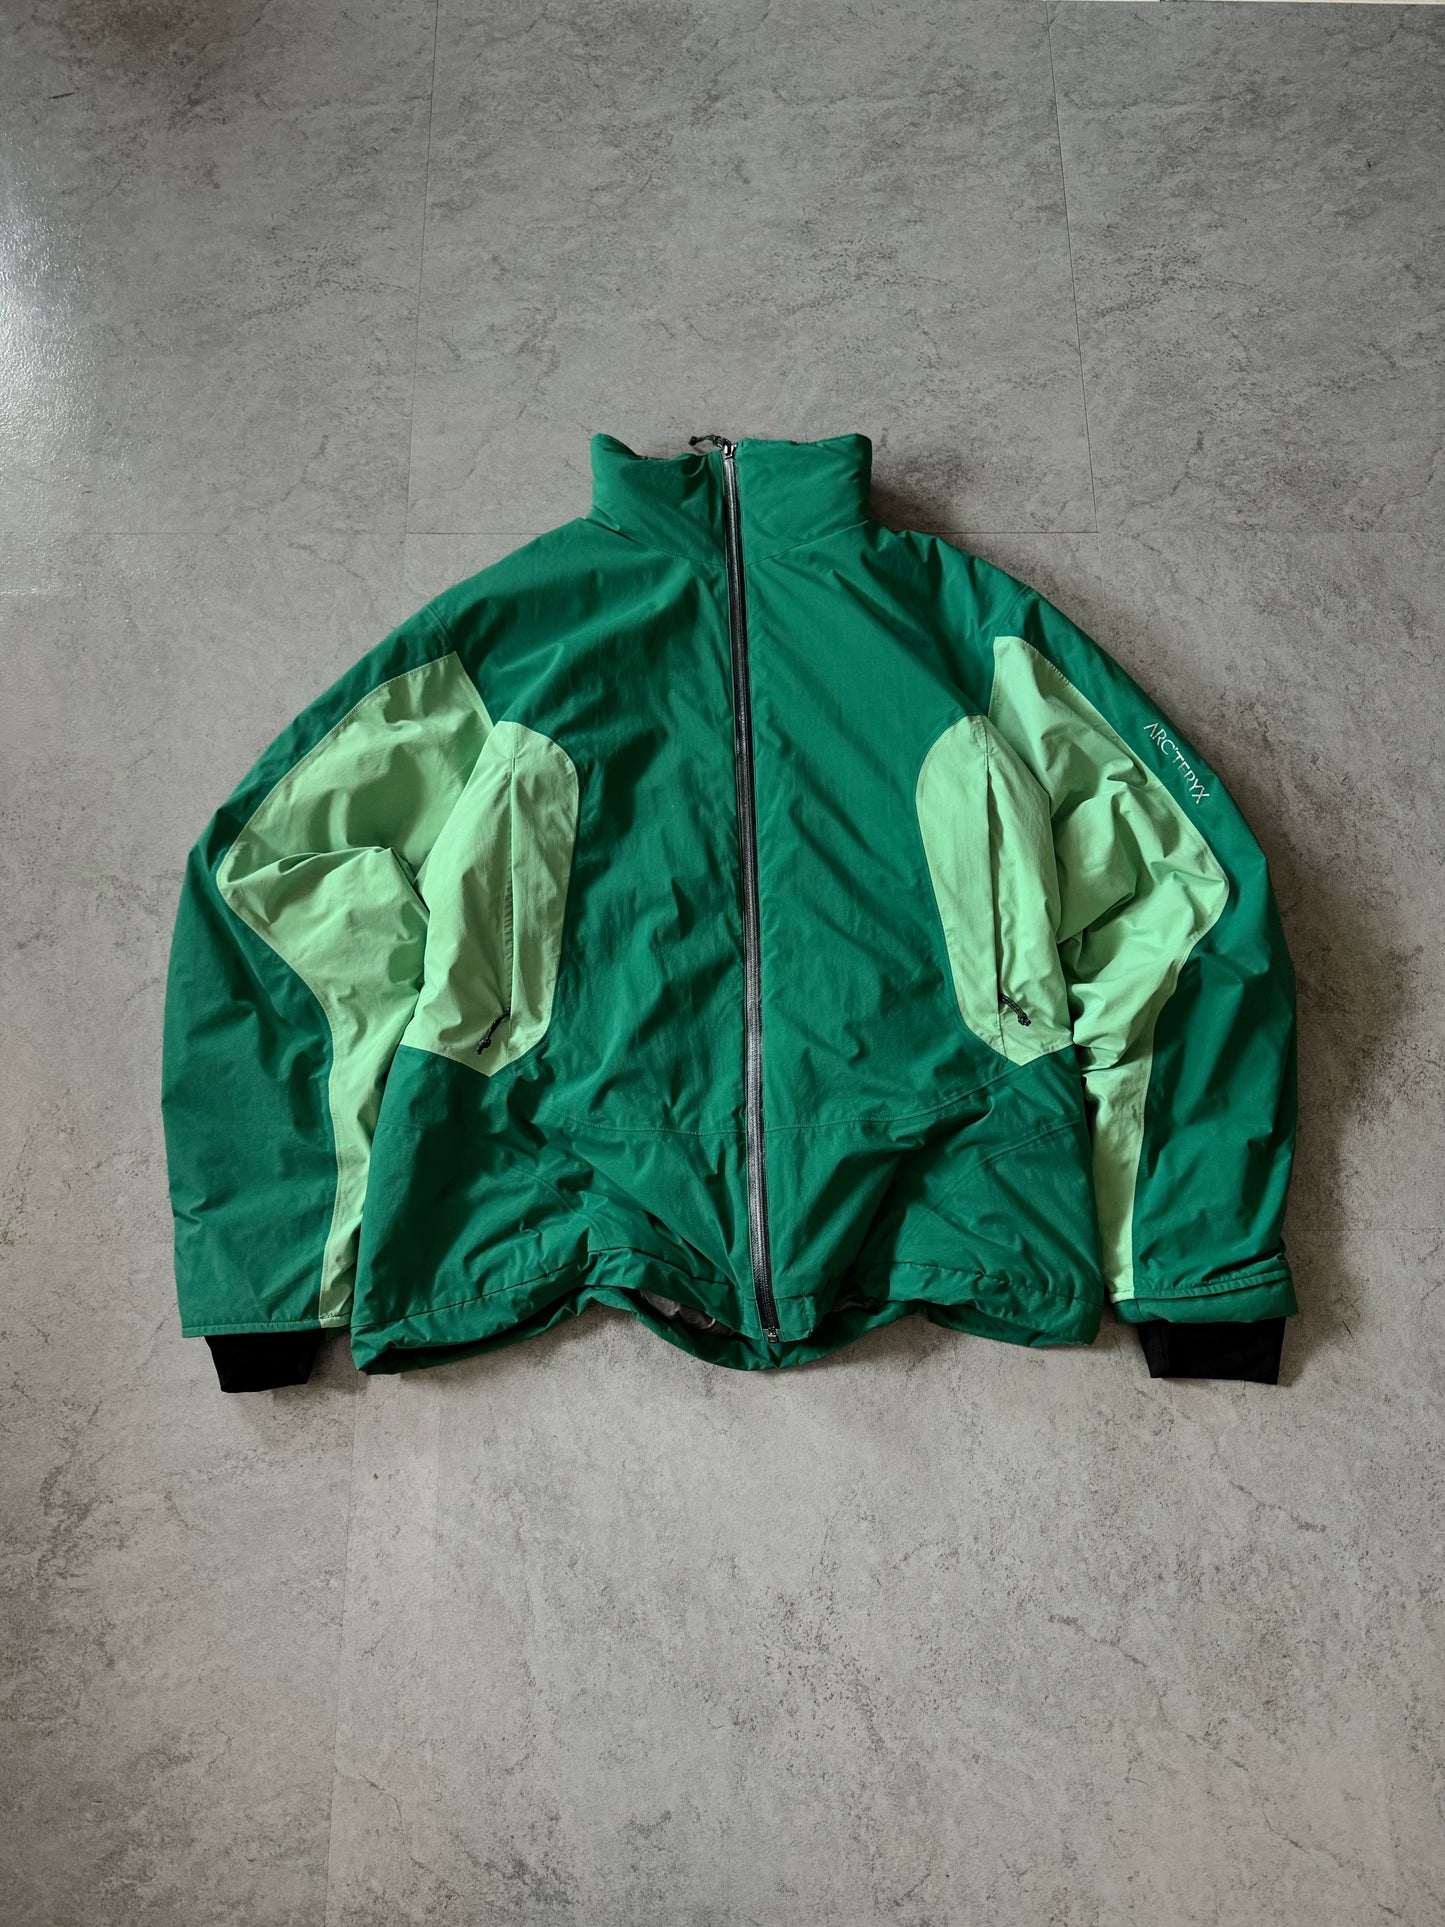 (L) Arc’teryx Green Jacket